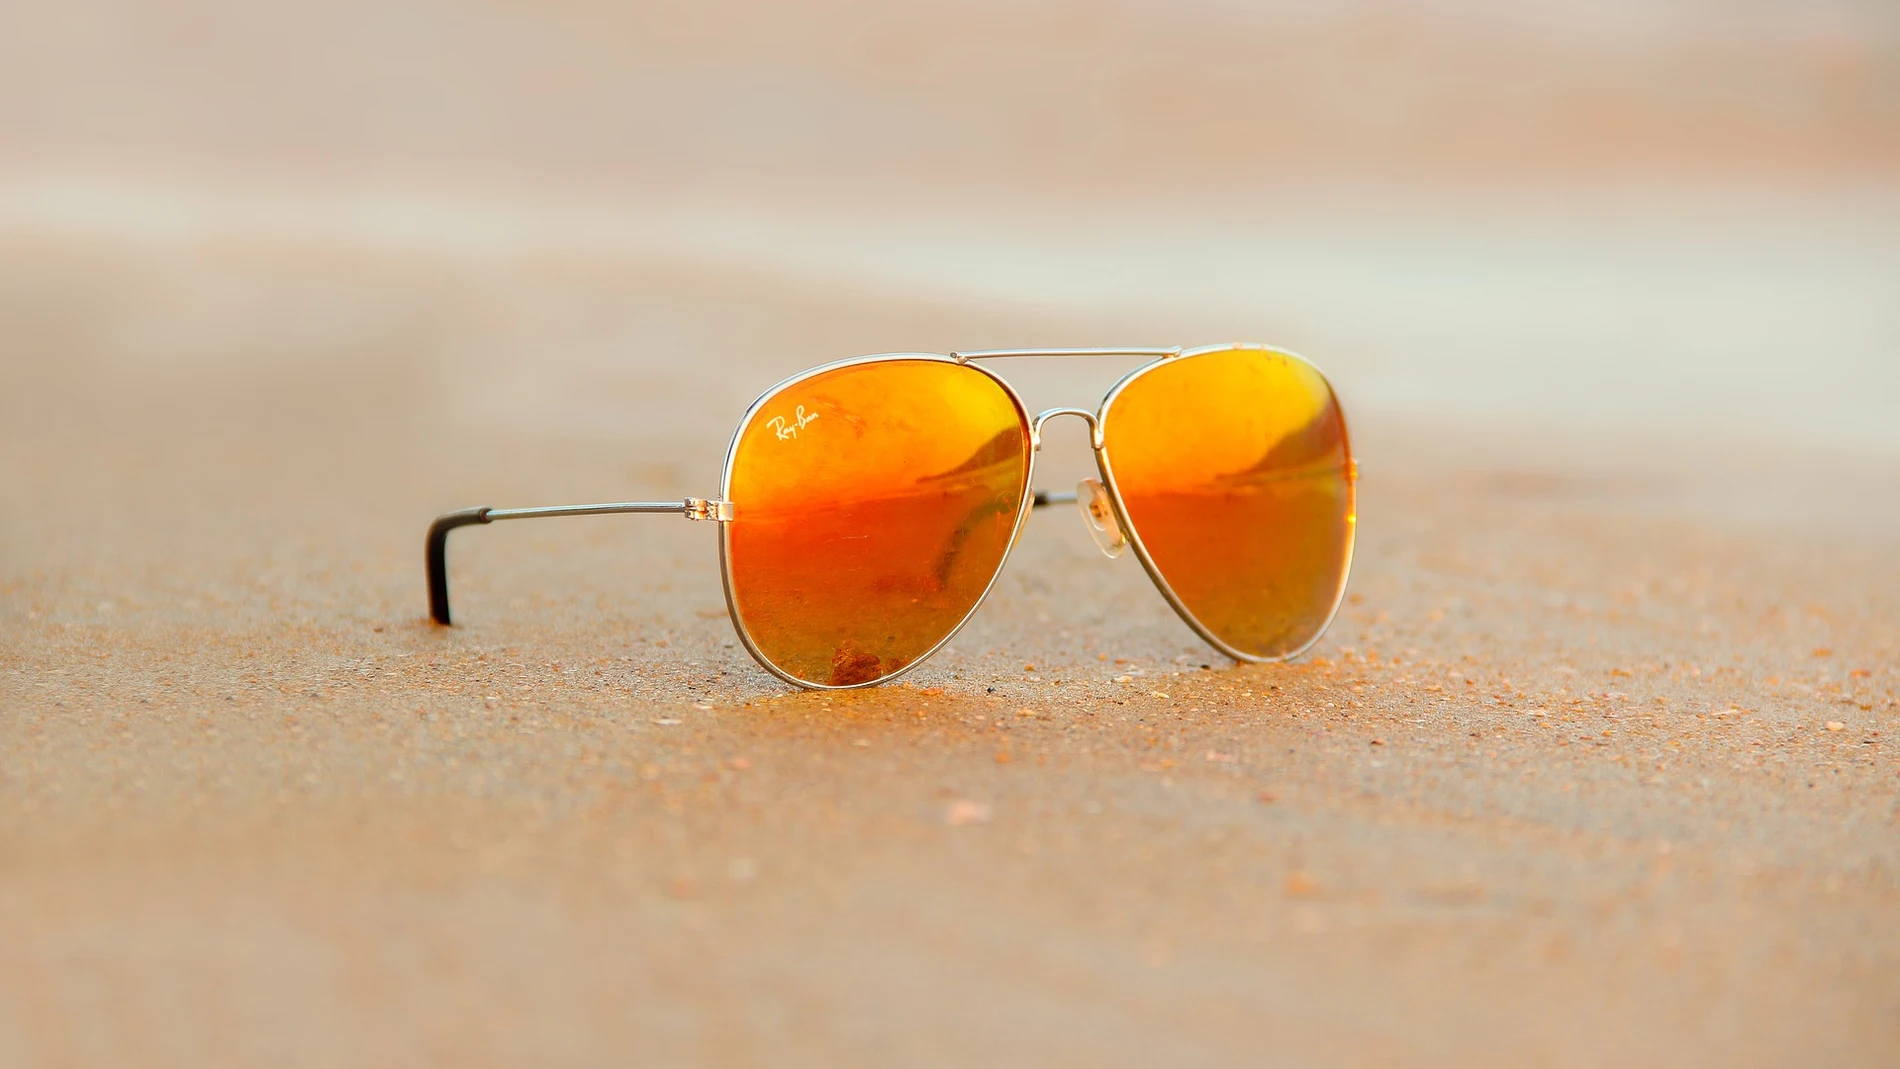 Cuáles son las mejores gafas de sol?